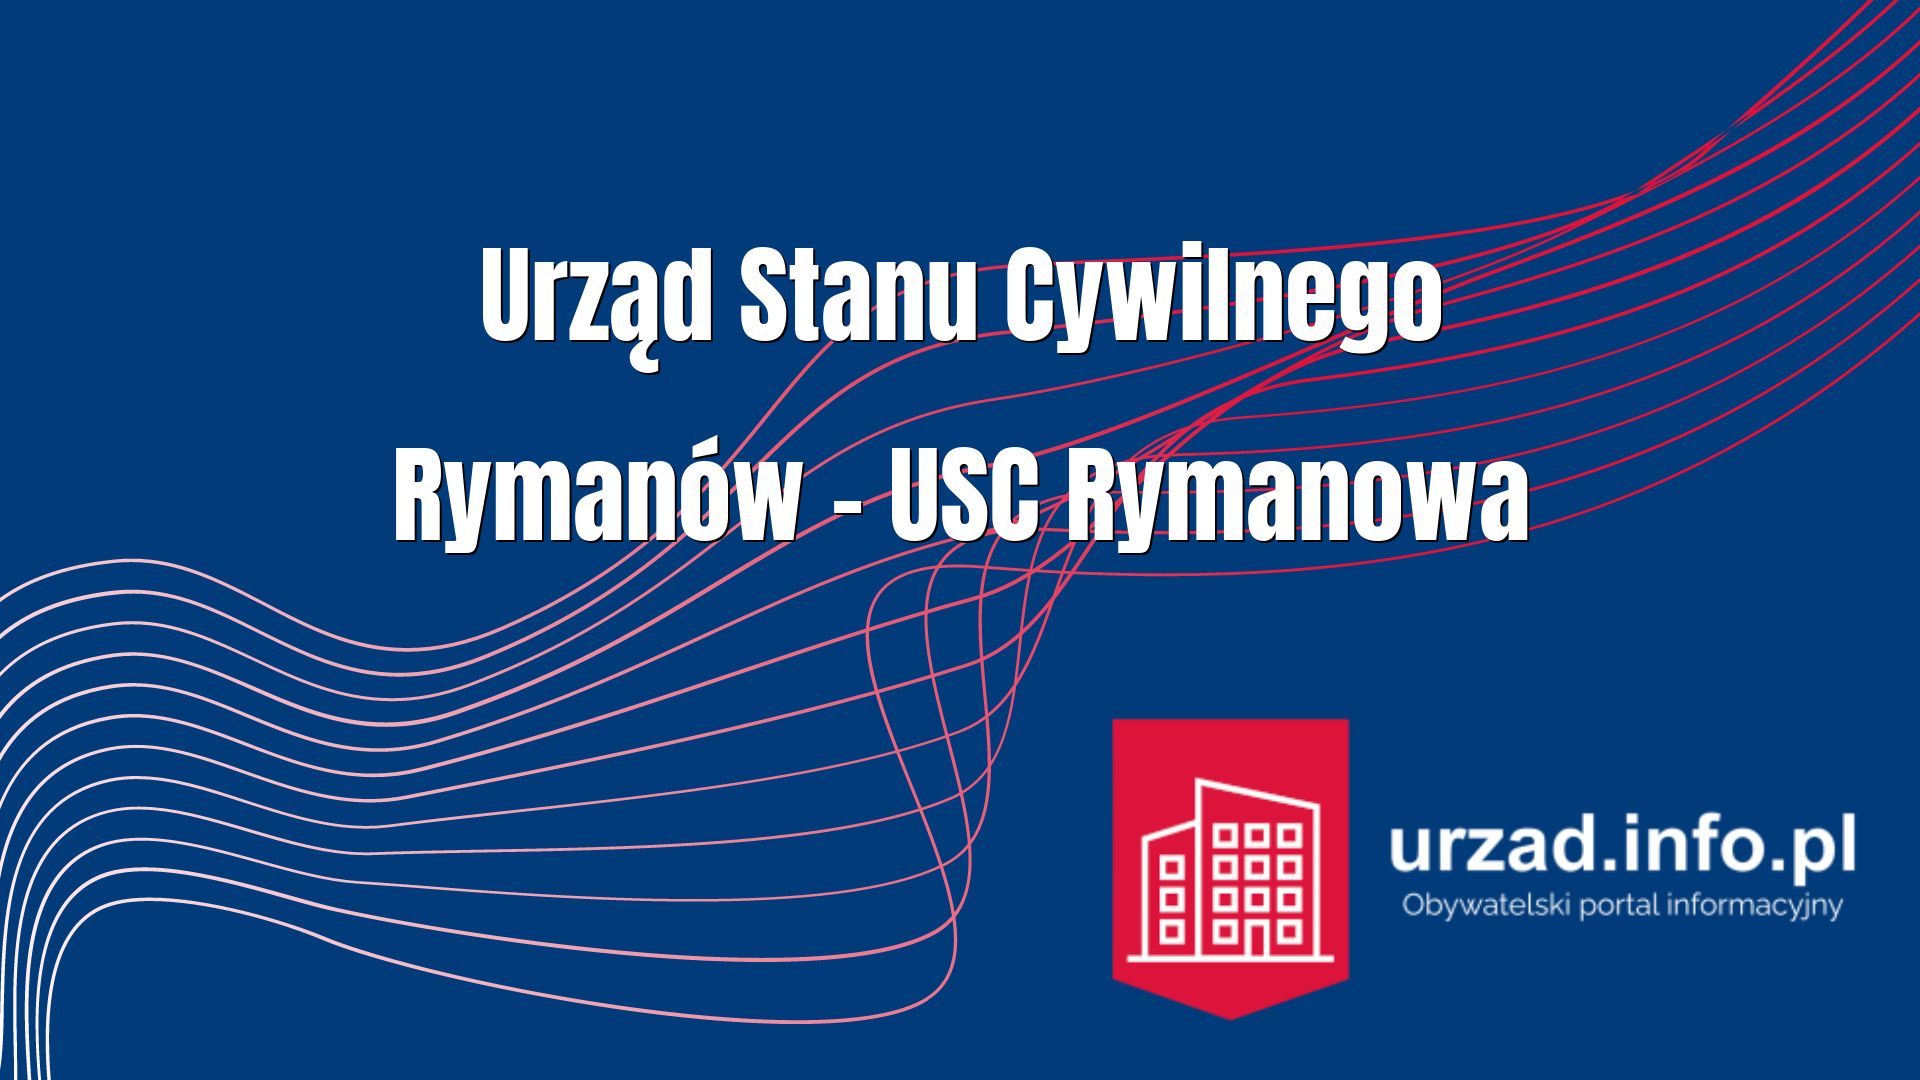 Urząd Stanu Cywilnego Rymanów – USC Rymanowa